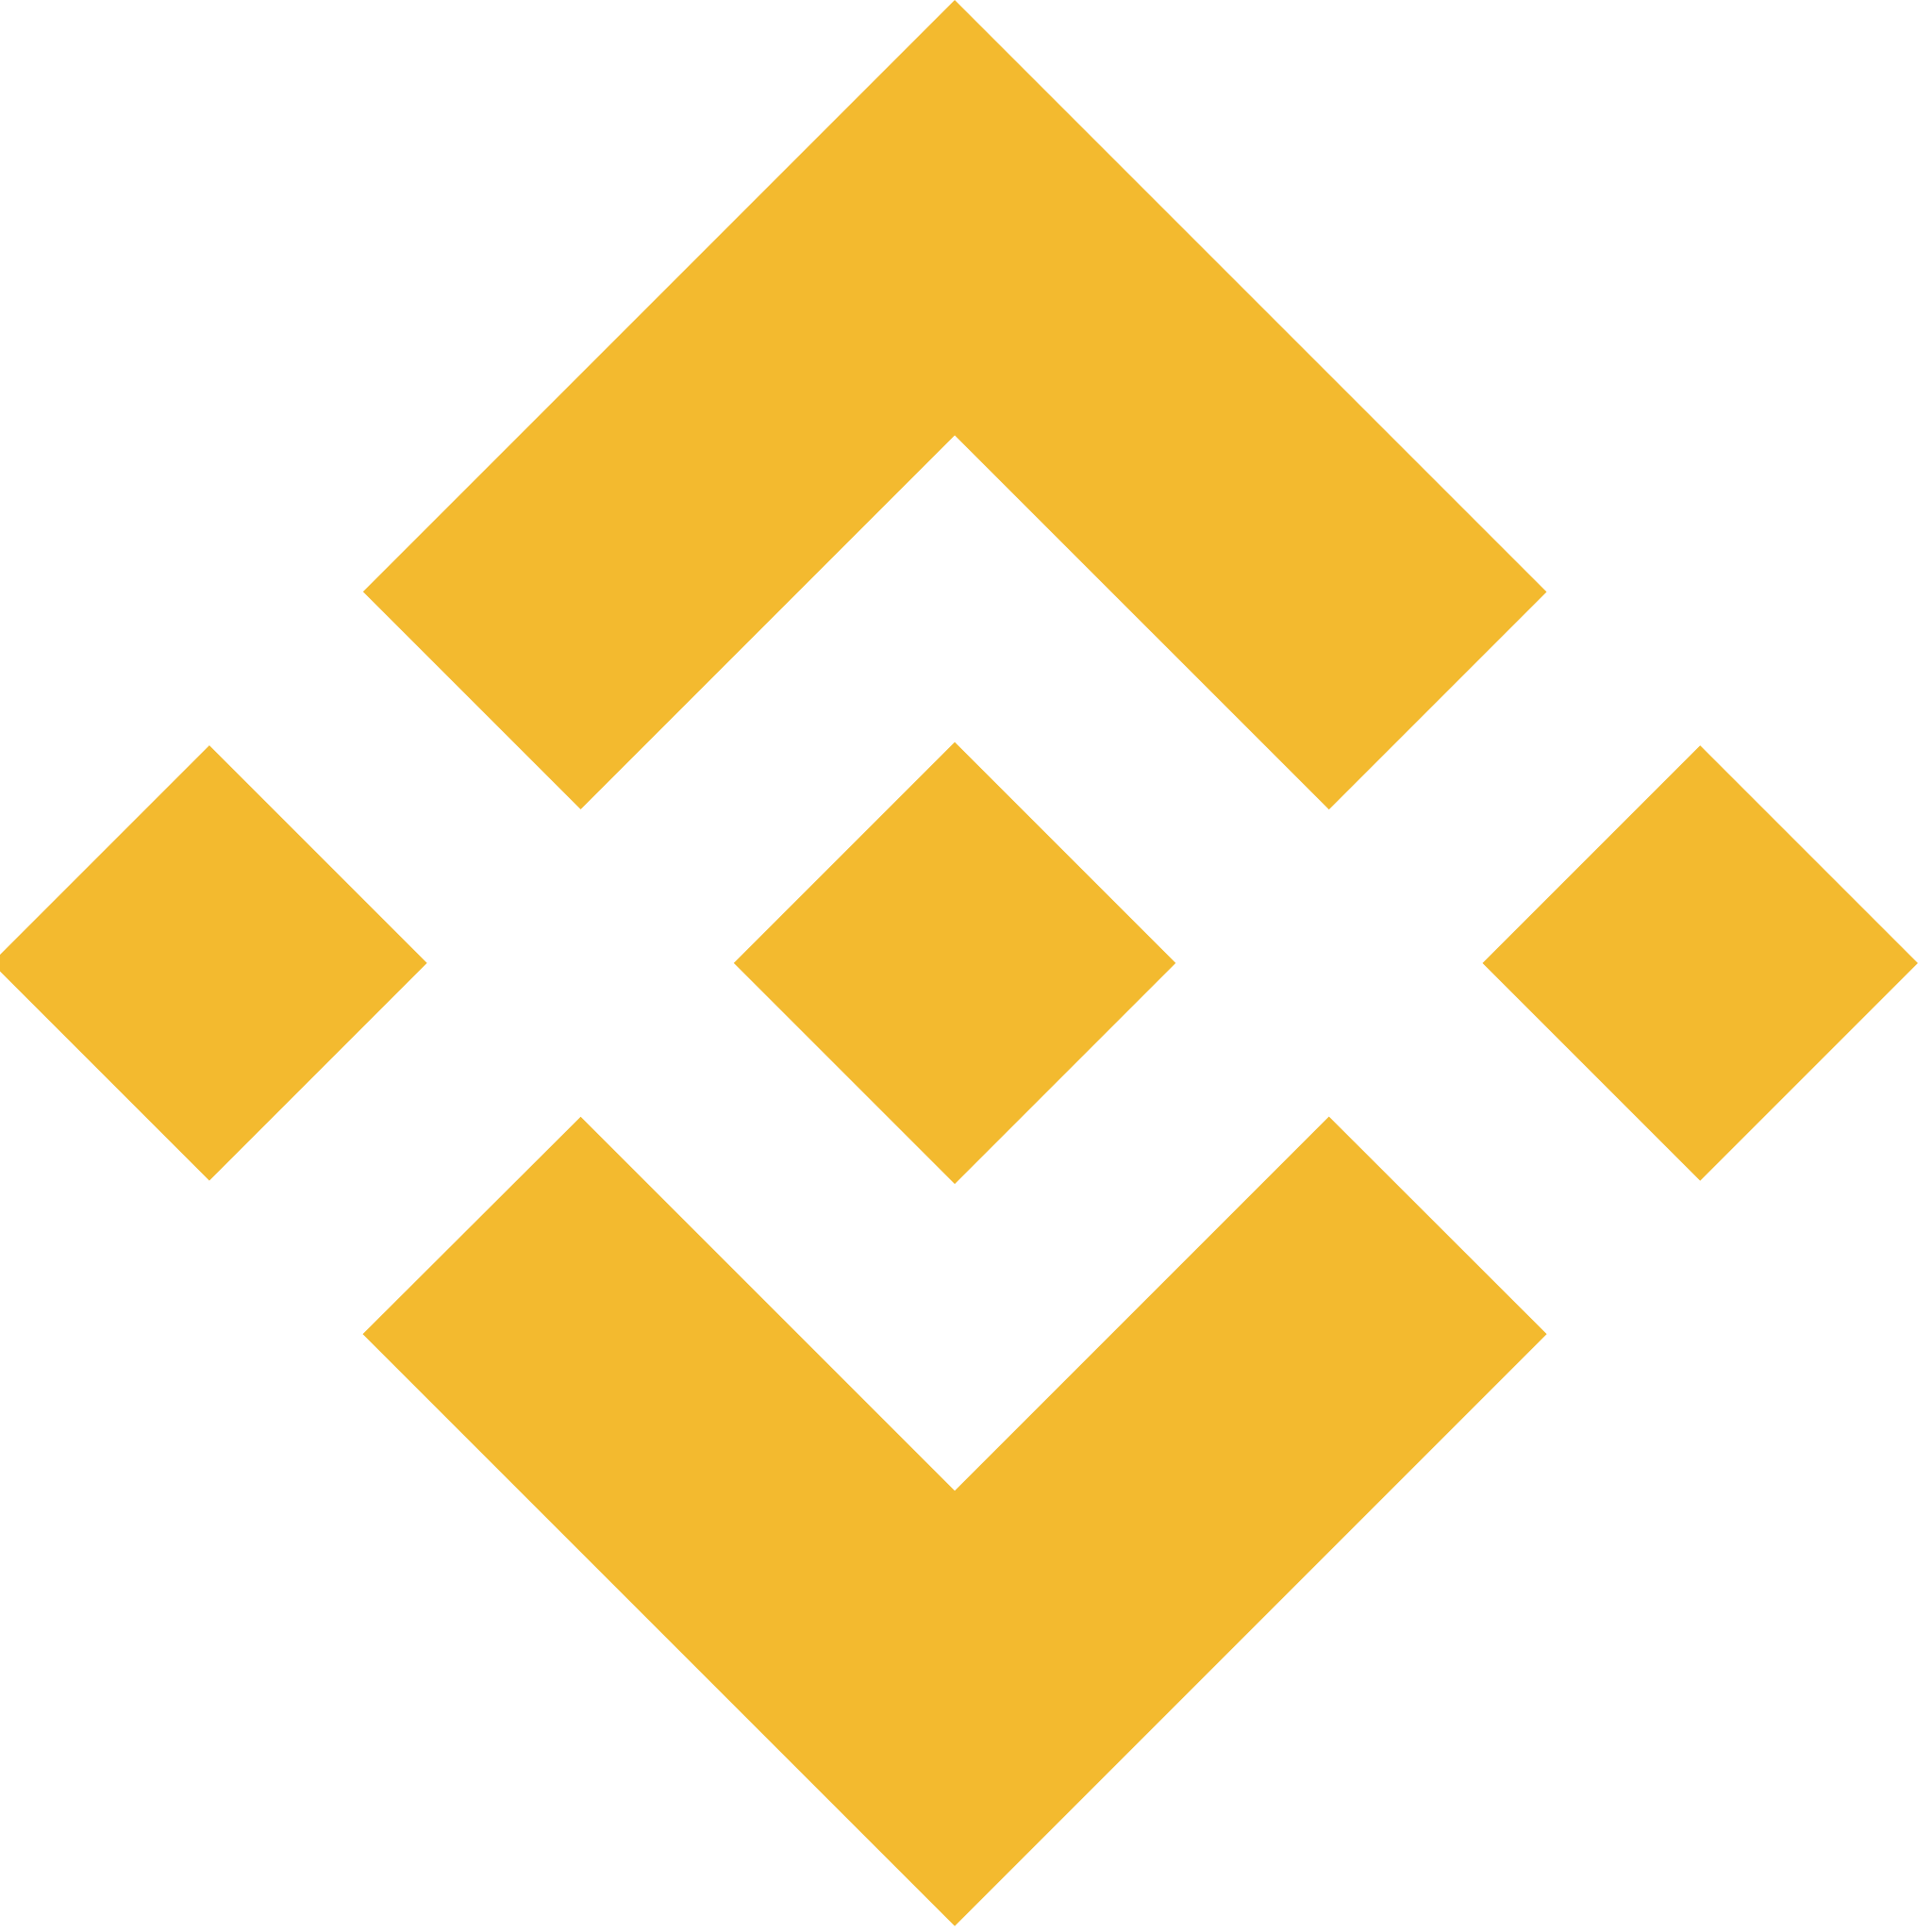 binance smart chain logo